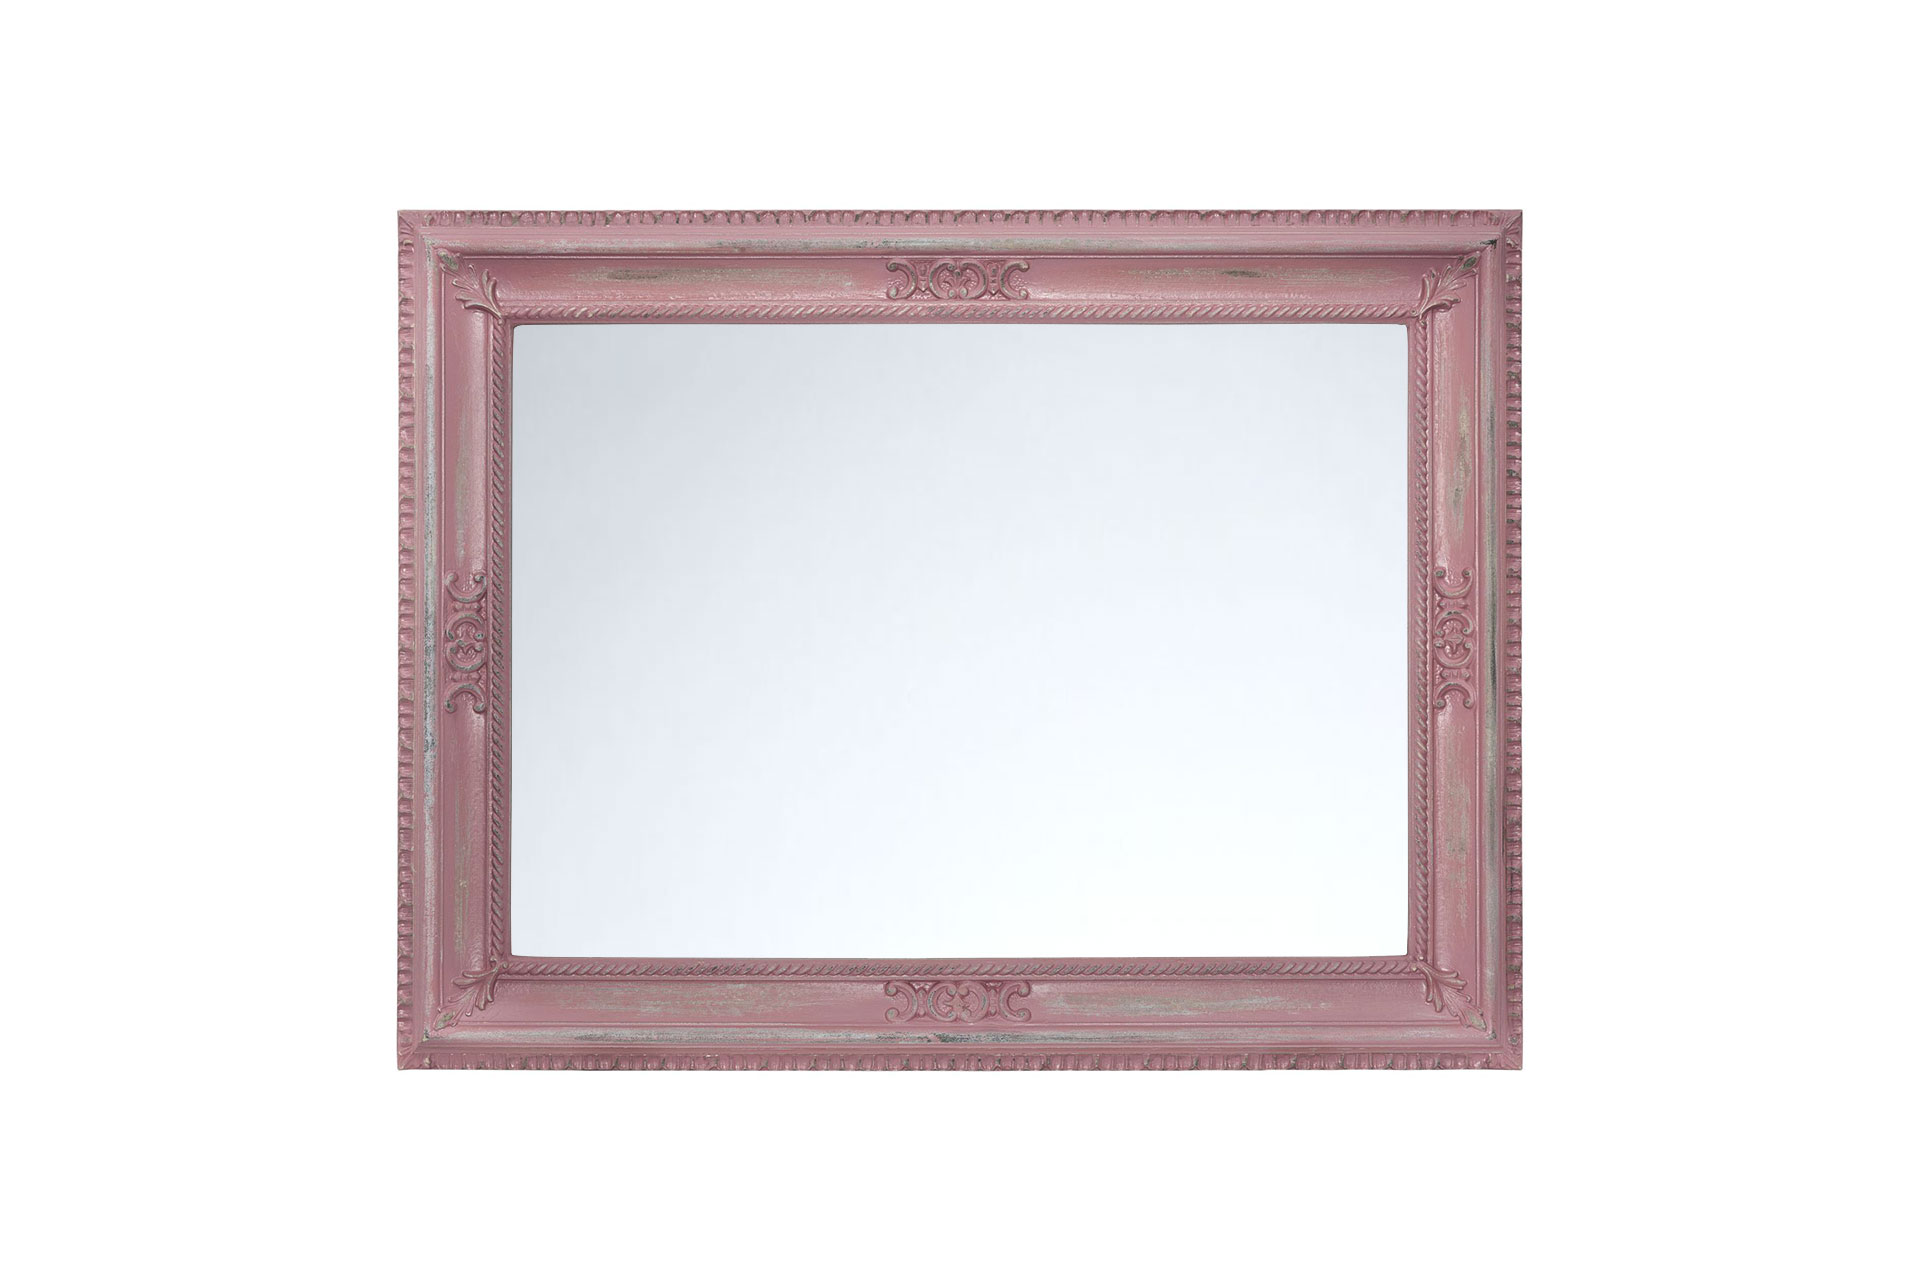 Wandspiegel Modell Grenoble, altrosa, recheckig, Querformat Rahmen mit Spiegel